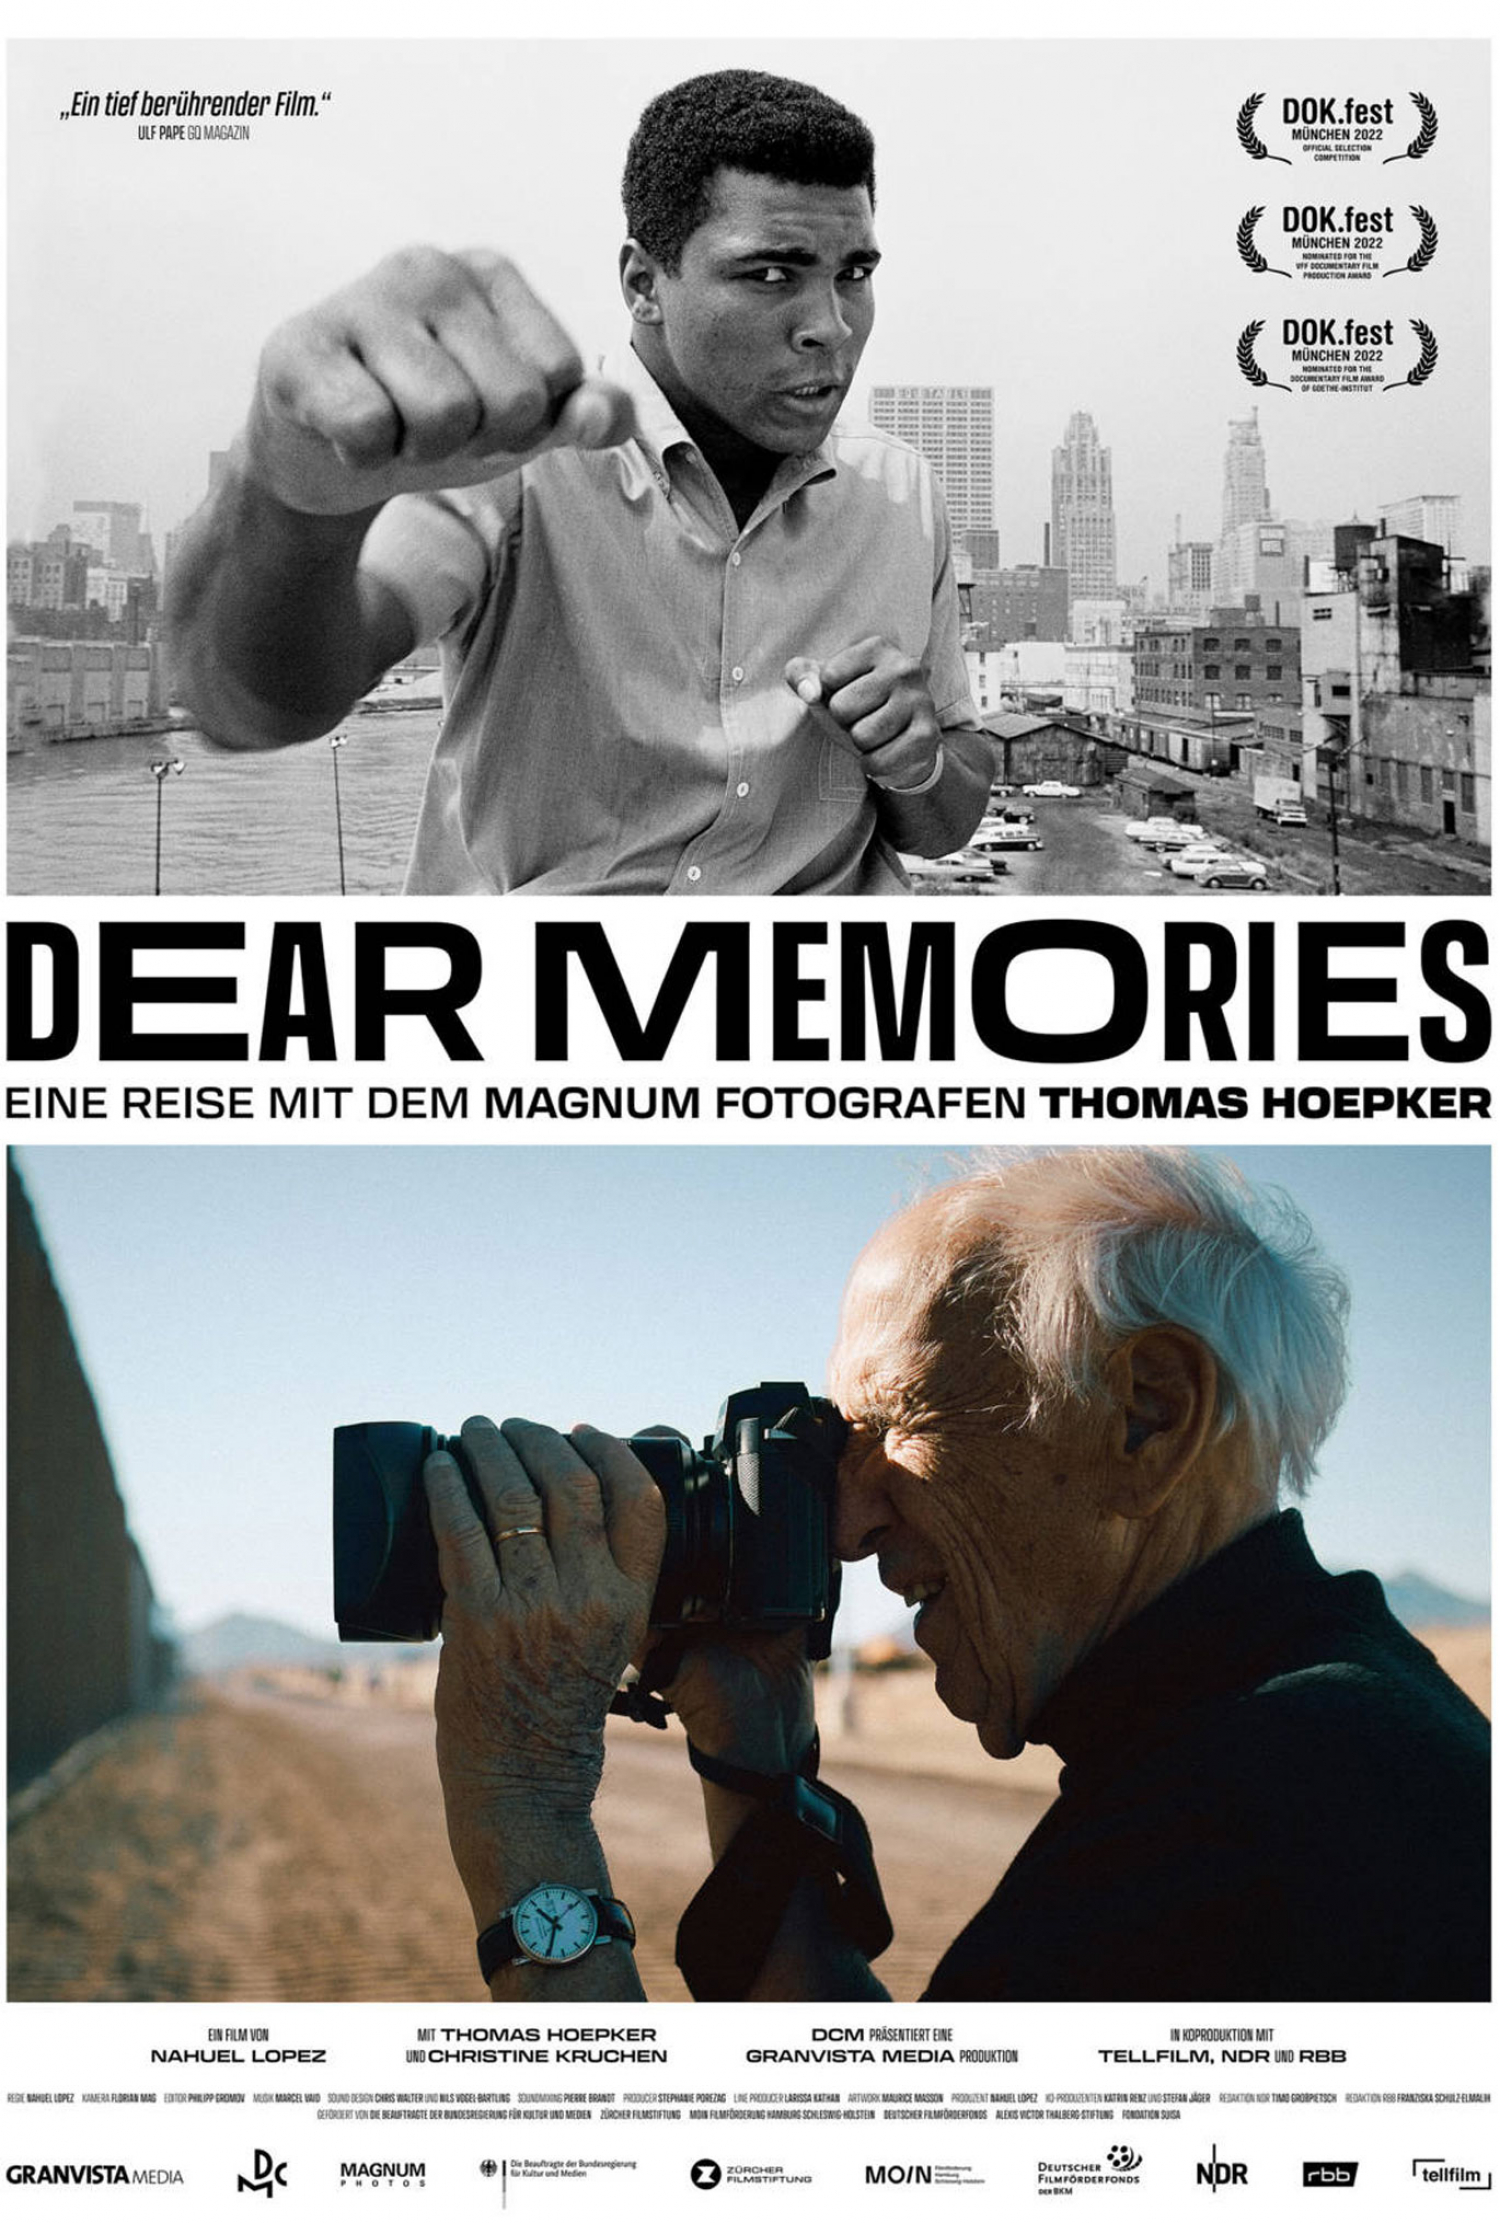 DEAR MEMORIES – EINE REISE MIT DEM MAGNUM-FOTOGRAFEN THOMAS HOEPKER